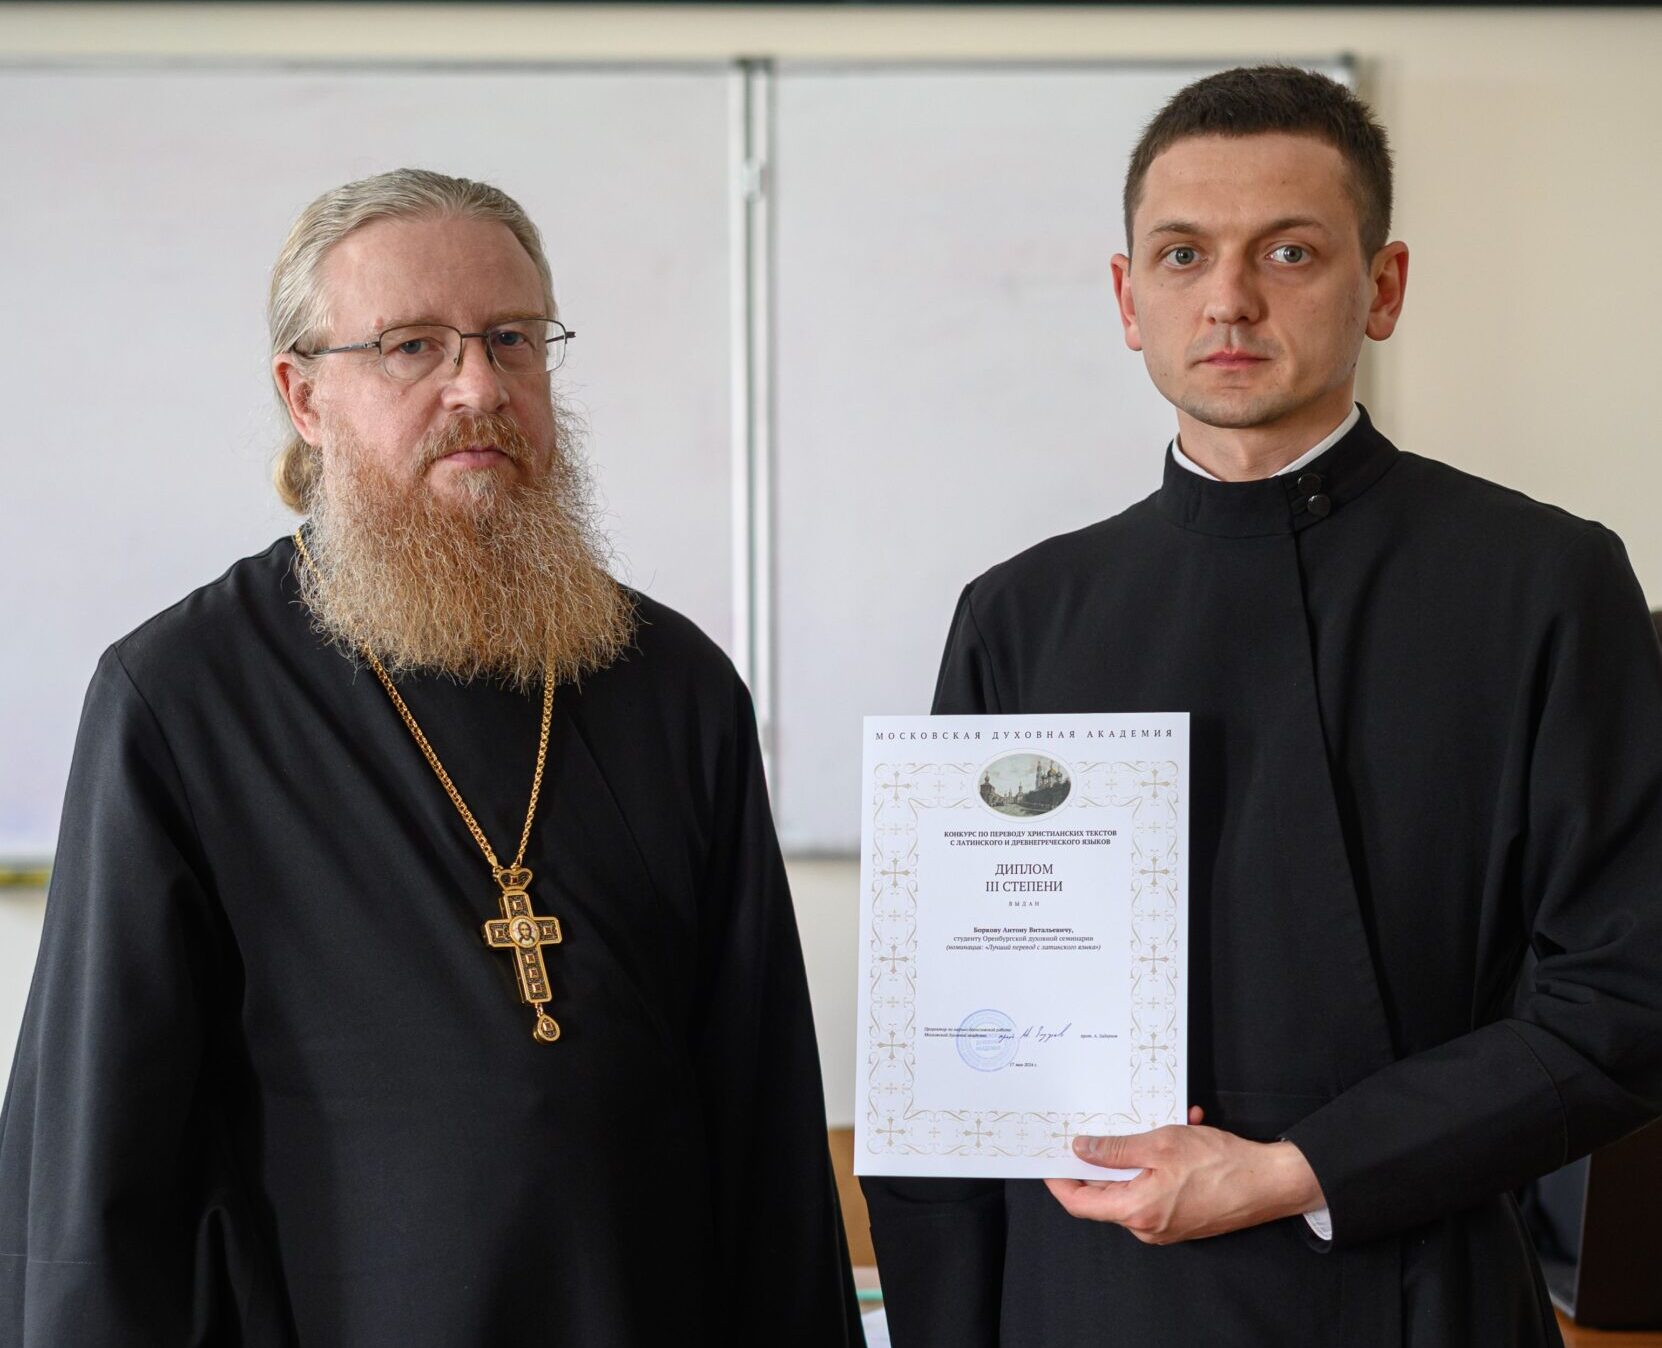 Студент 2 курса бакалавриата ОренДС награжден дипломом за участие в конкурсе по переводу христианских текстов